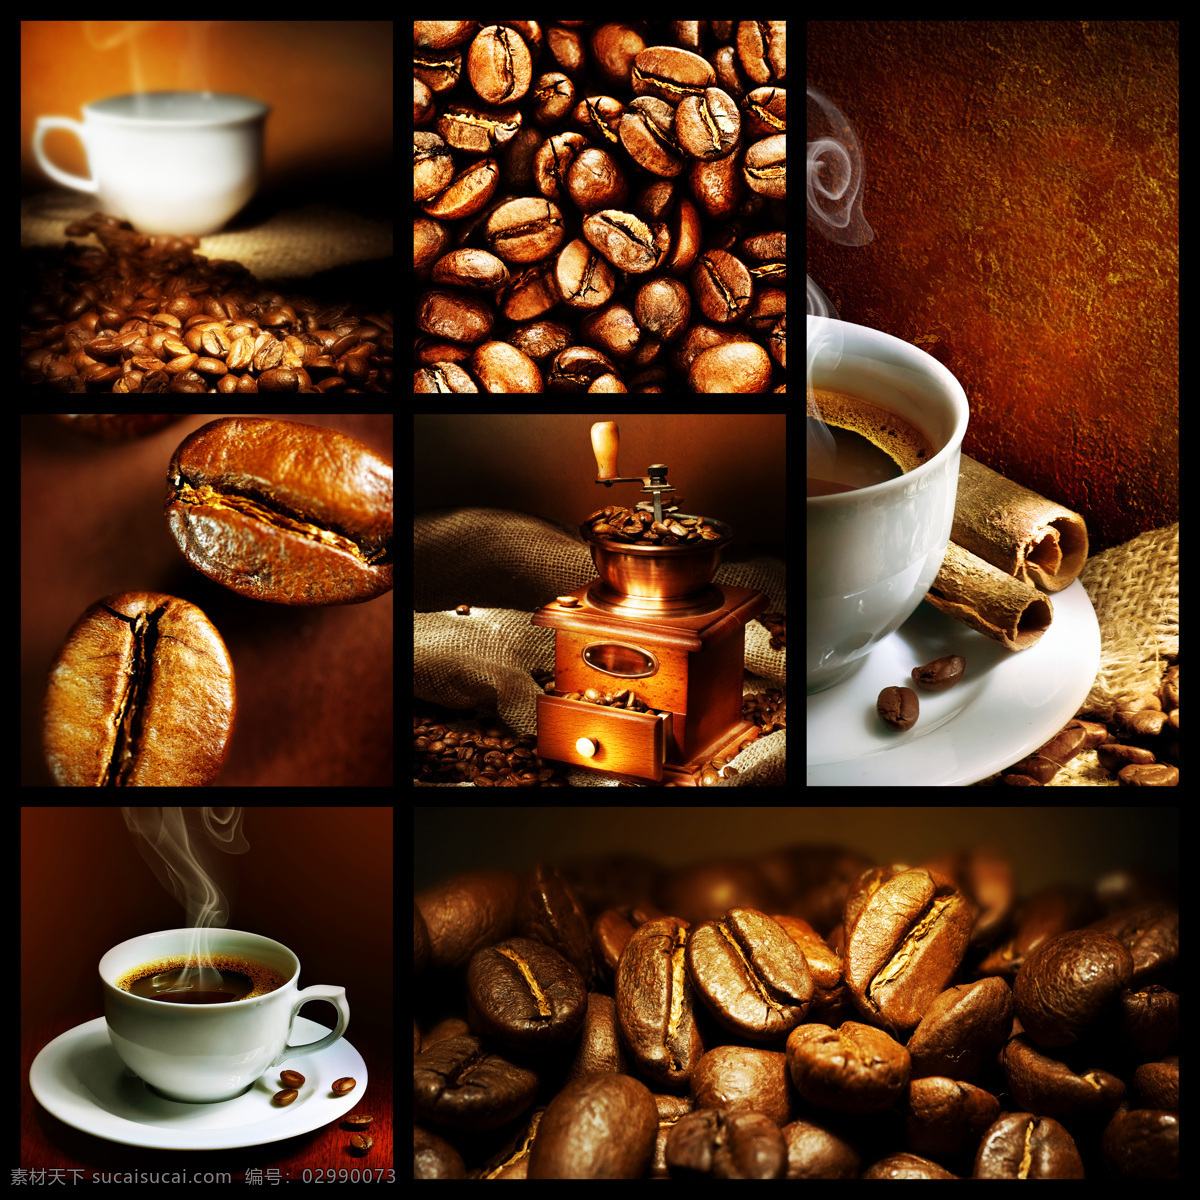 咖啡 研磨机 咖啡杯子 咖啡机 咖啡豆 香浓的咖啡 酒水饮料 餐饮美食 黑色